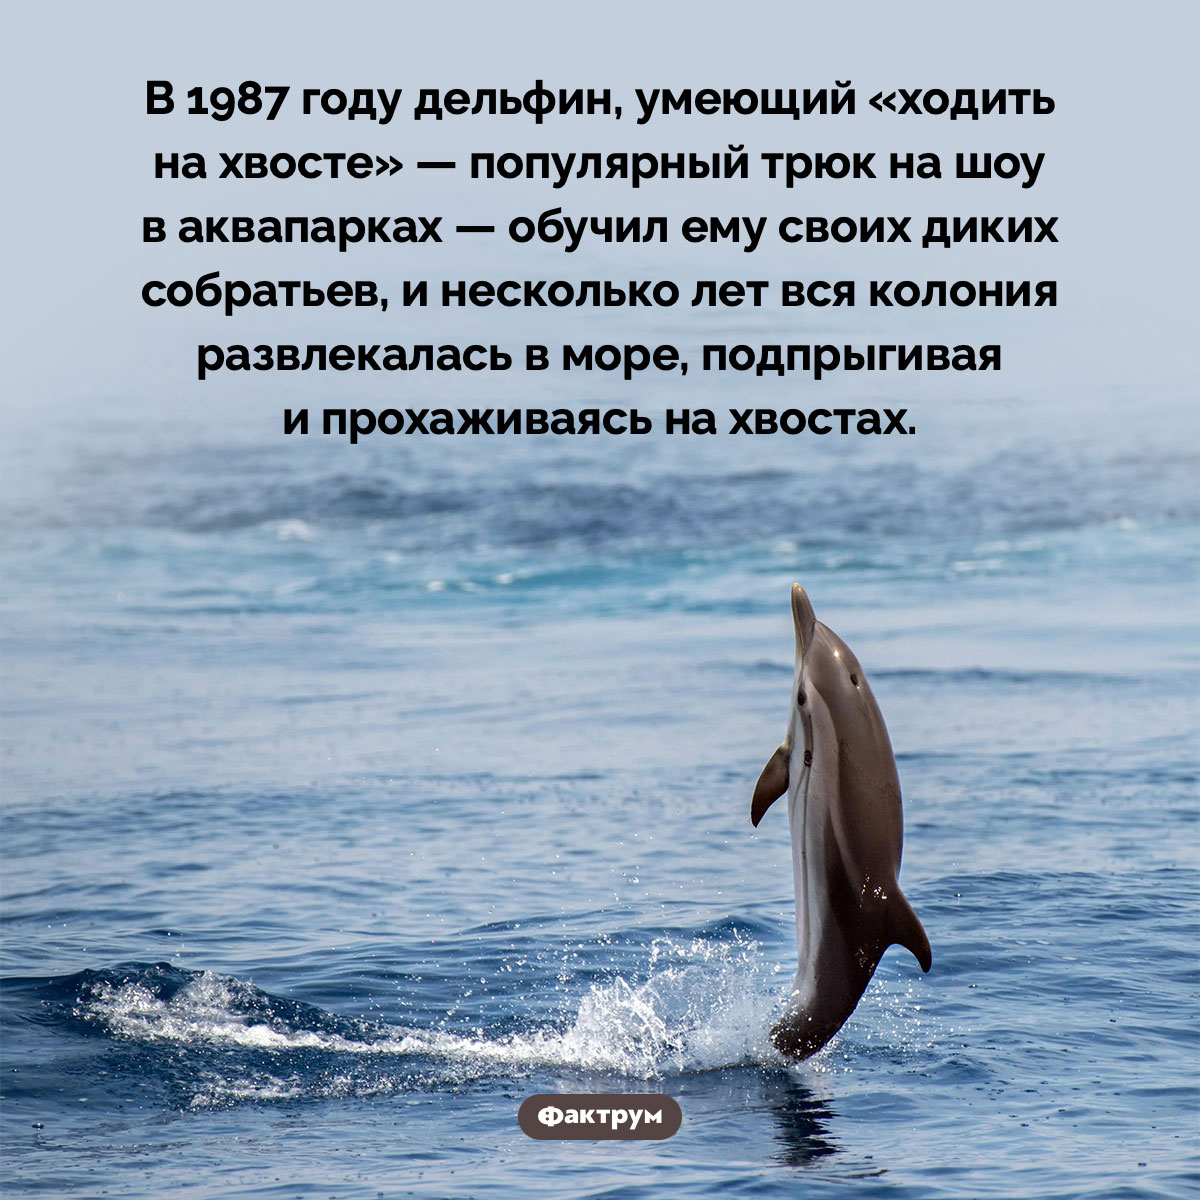 Дельфин может научить других дельфинов цирковым трюкам. В 1987 году дельфин, умеющий «ходить на хвосте» — популярный трюк на шоу в аквапарках — обучил ему своих диких собратьев, и несколько лет вся колония развлекалась в море, подпрыгивая и прохаживаясь на хвостах.